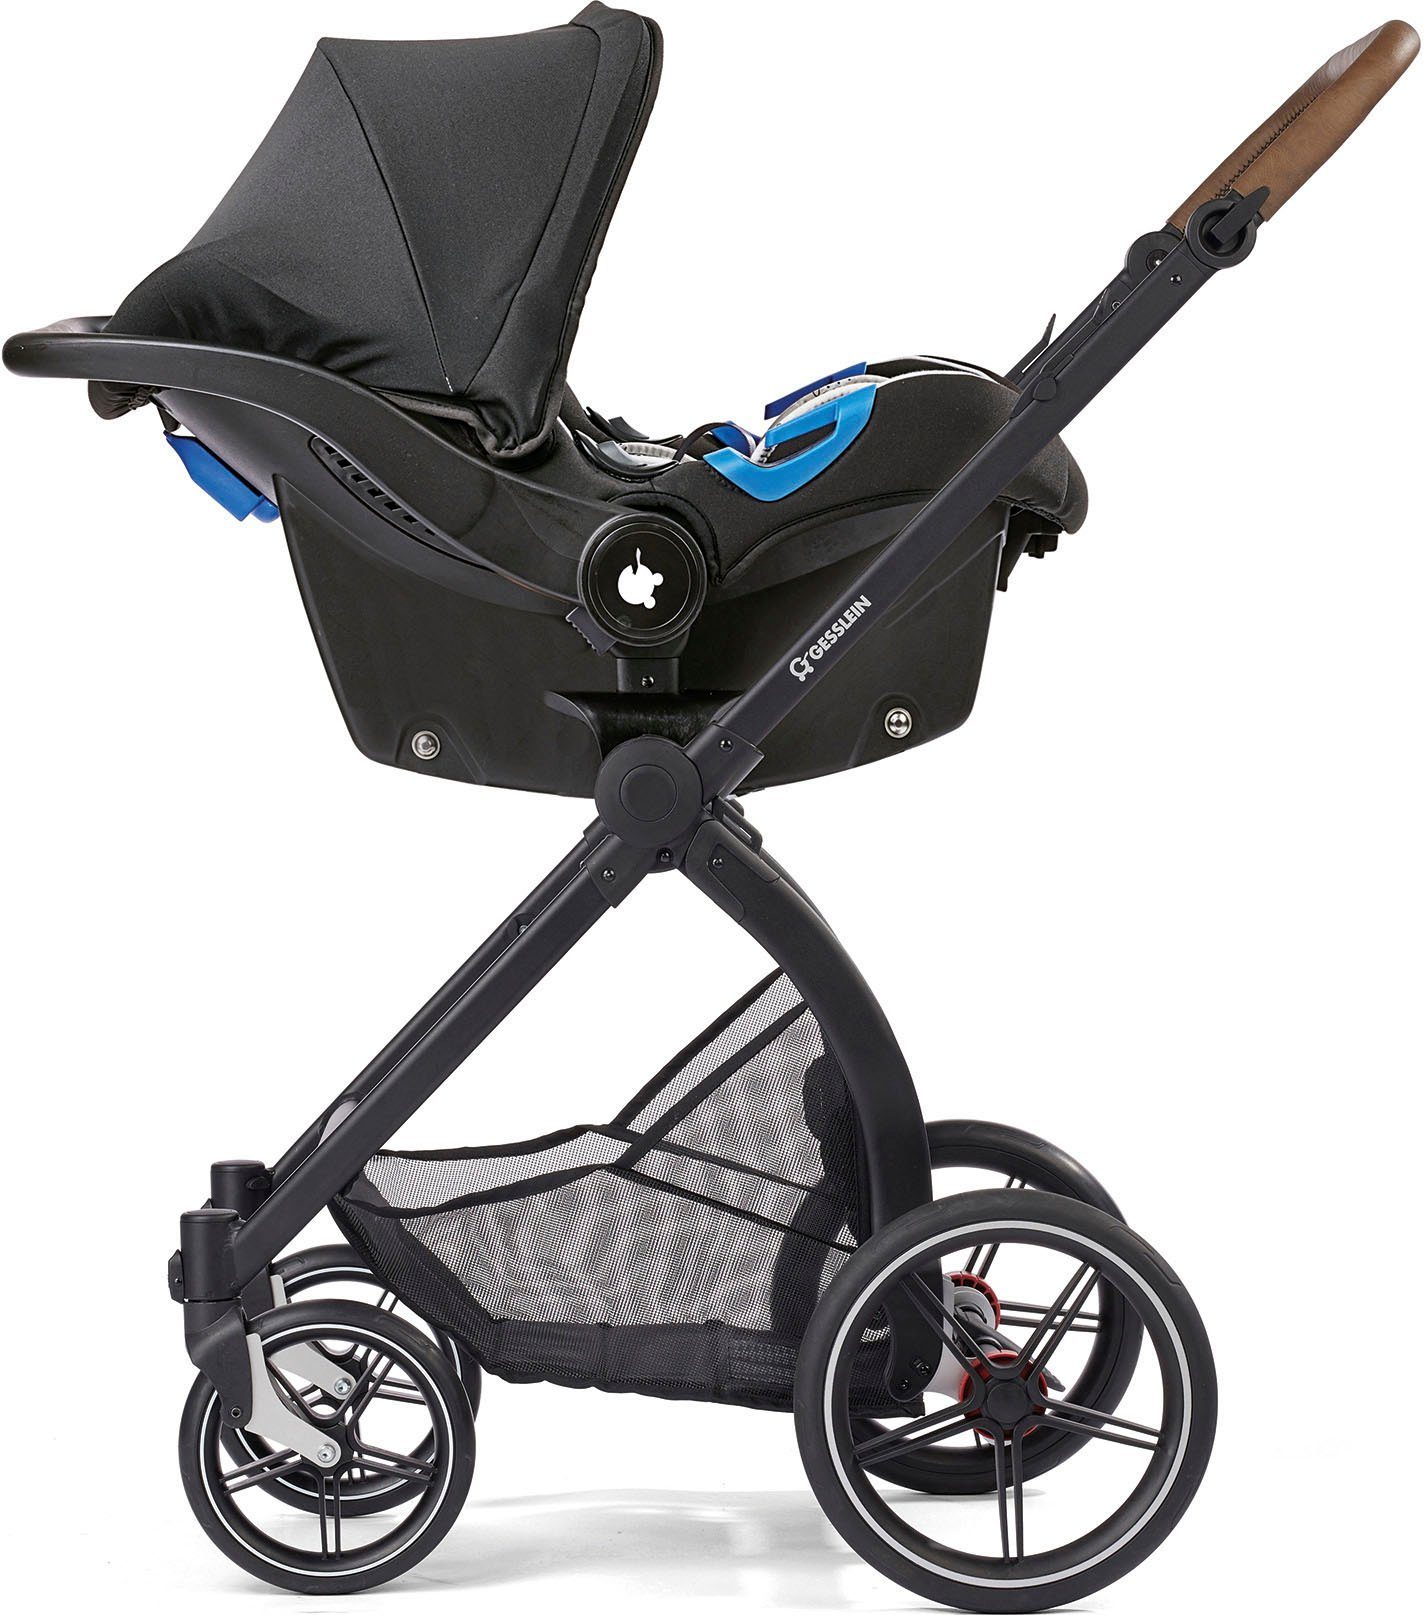 Gesslein Kombi-Kinderwagen FX4 Soft+ mit und Aufsatz C3 schwarz/tabak, mit Babyschalenadapter Classic khaki, Babywanne